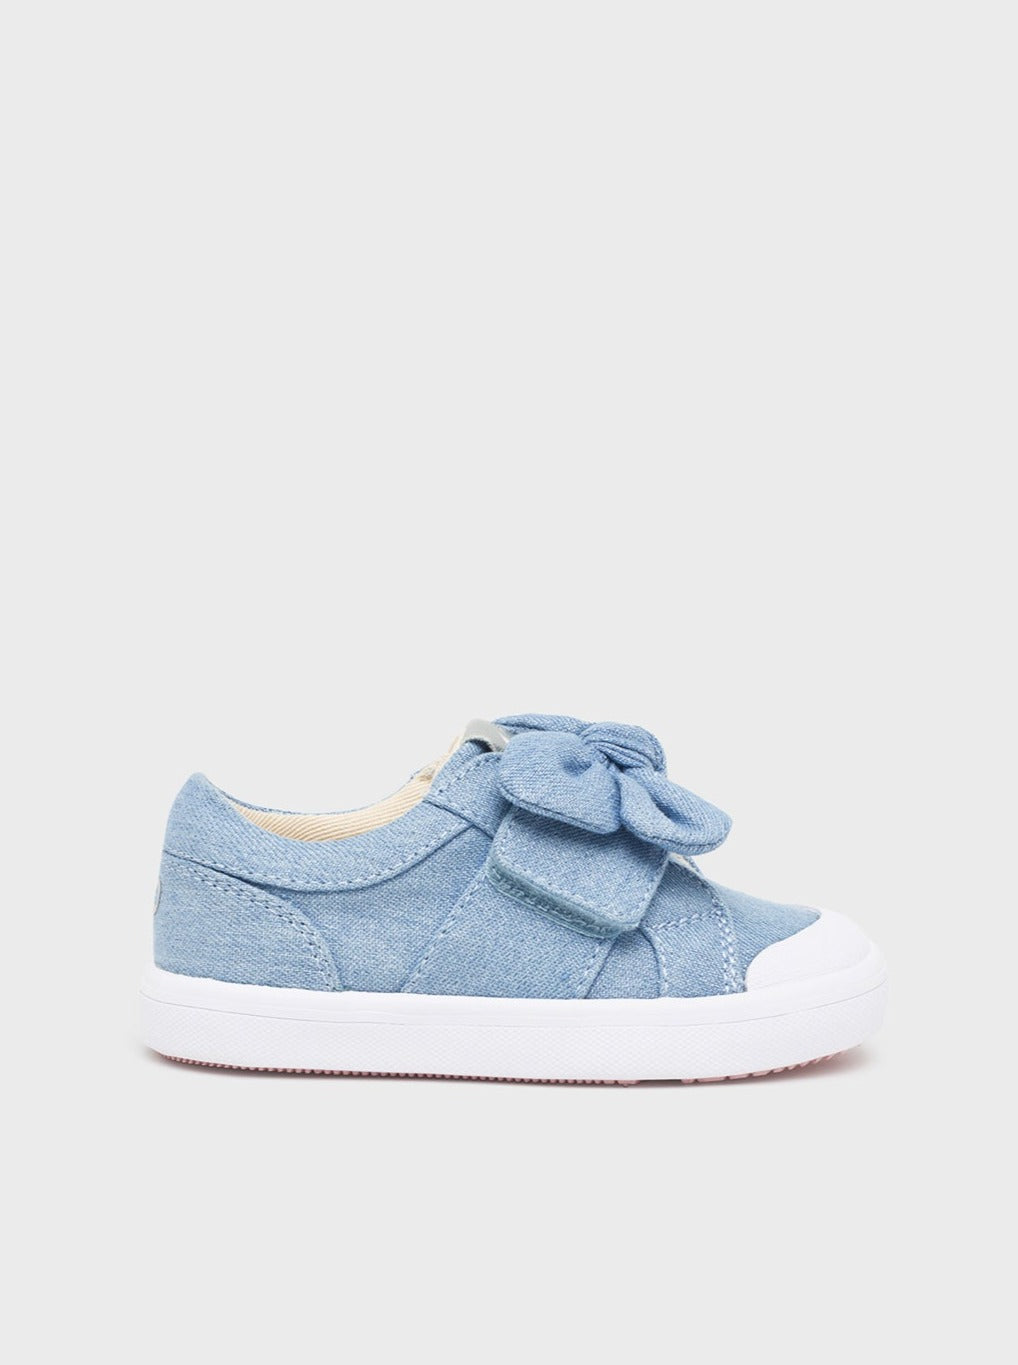 Mayoral Baby Denim Sneakers Blue_41432-060